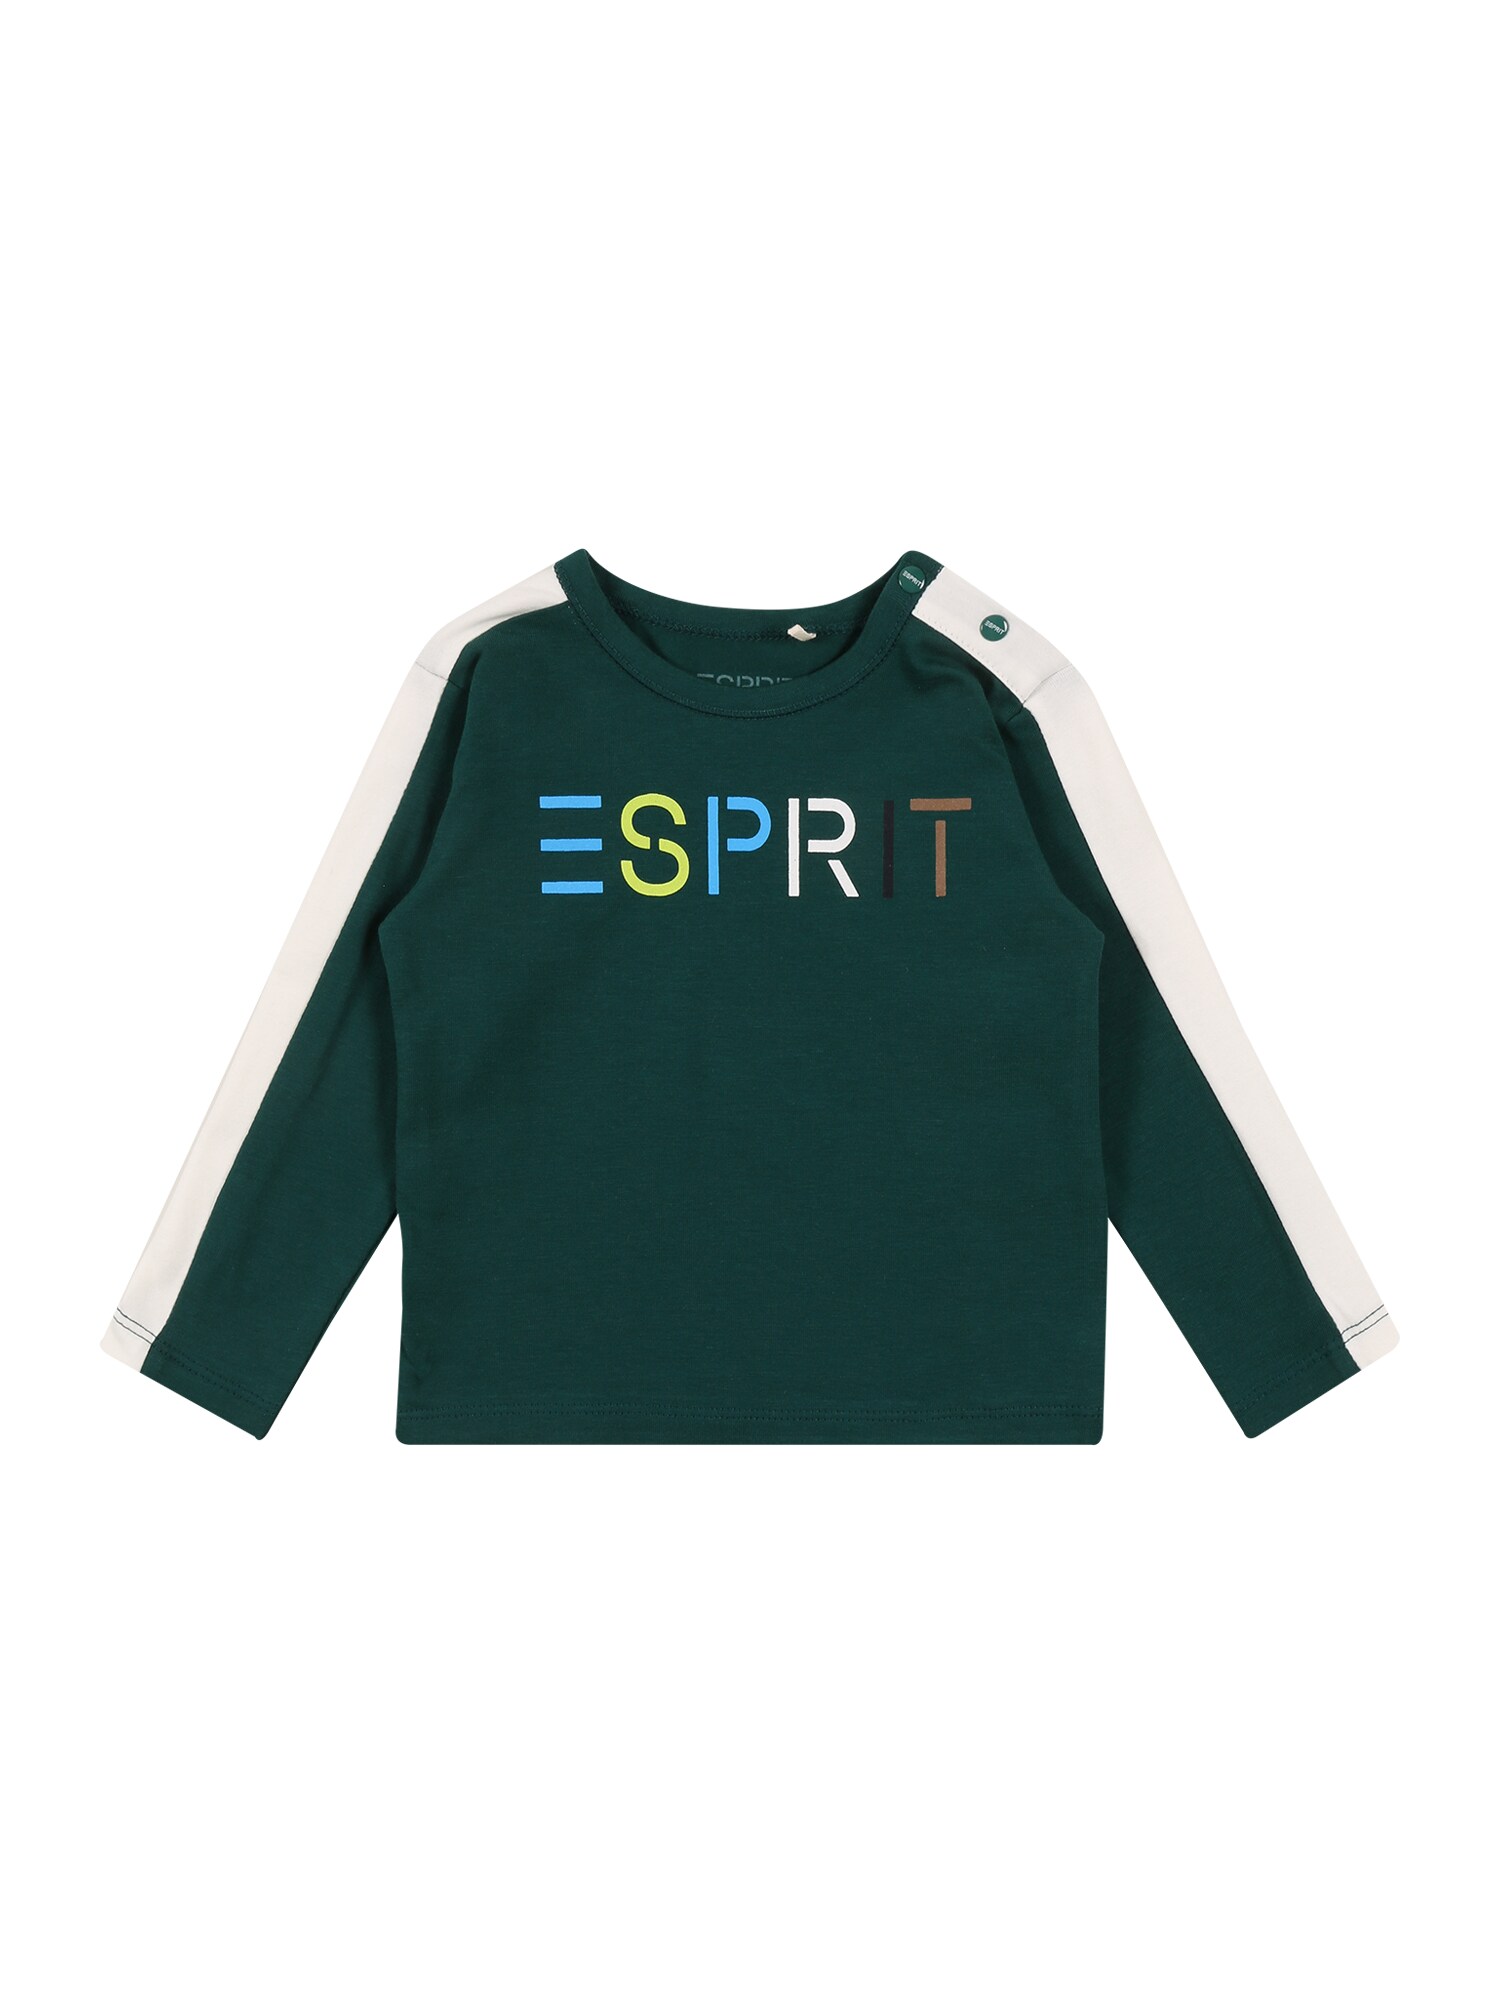 ESPRIT Marškinėliai  tamsiai žalia / balta / mėlyna / geltona